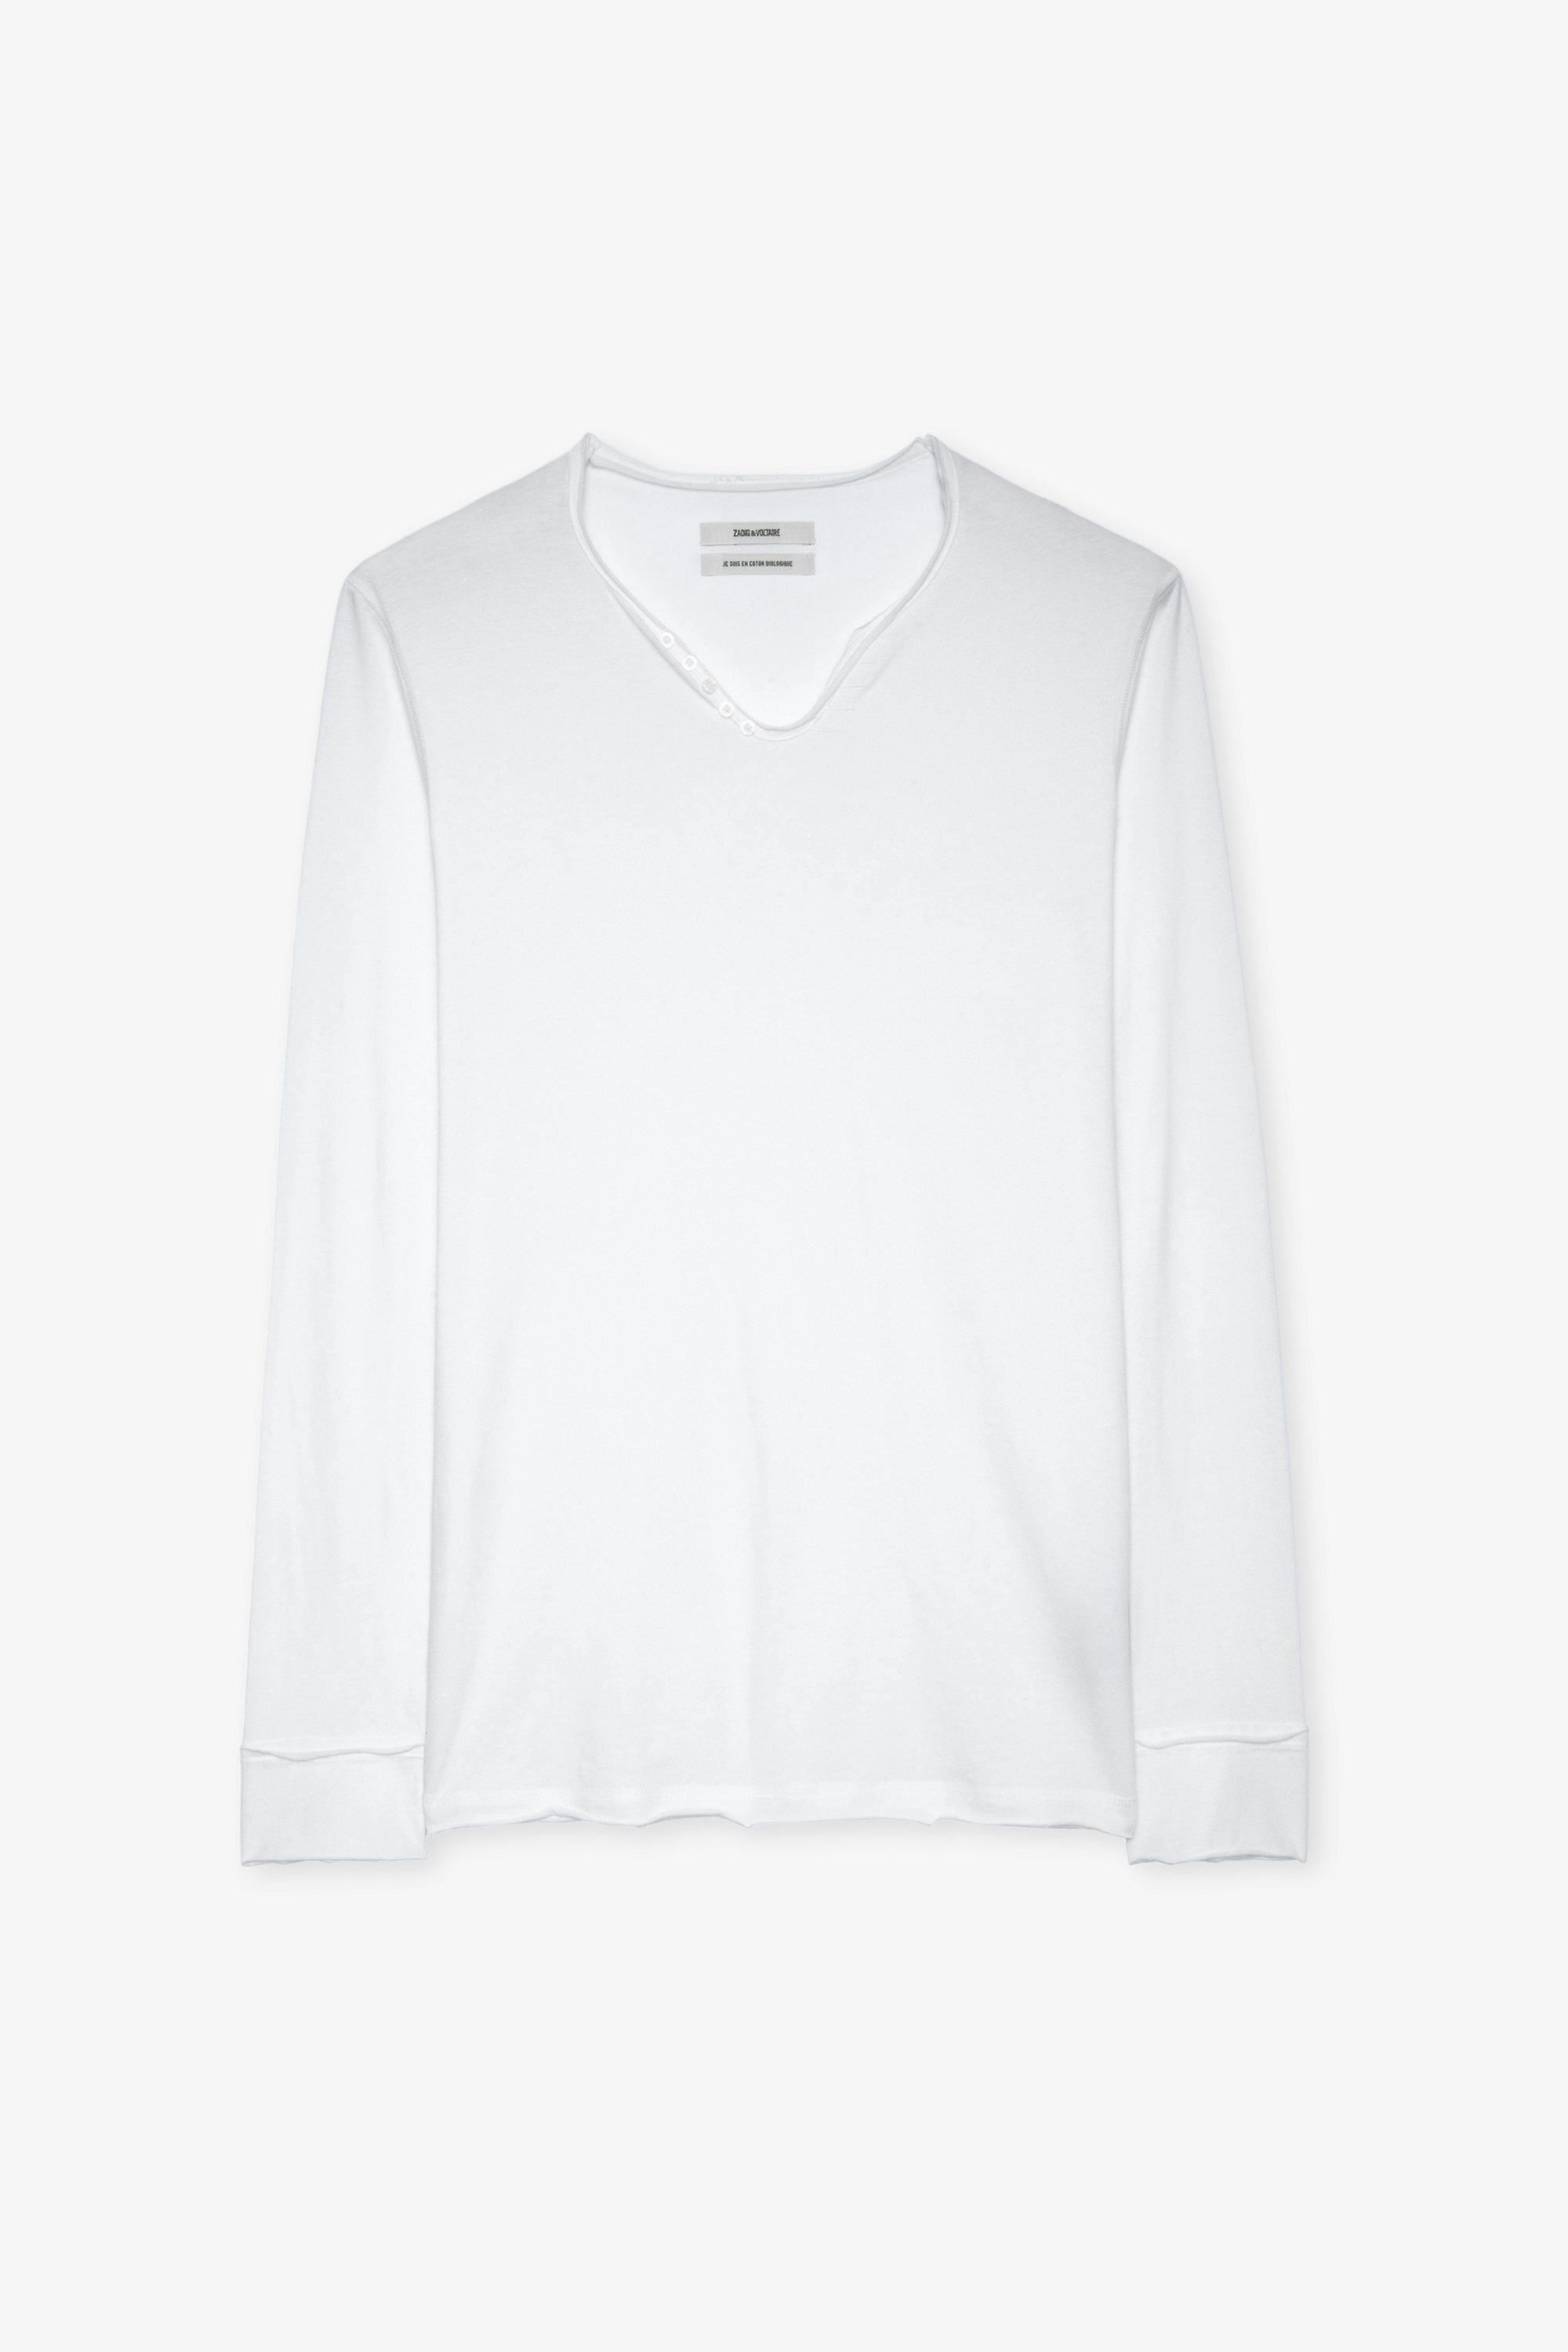 Camiseta Monastir Camiseta blanca con cuello tunecino de algodón